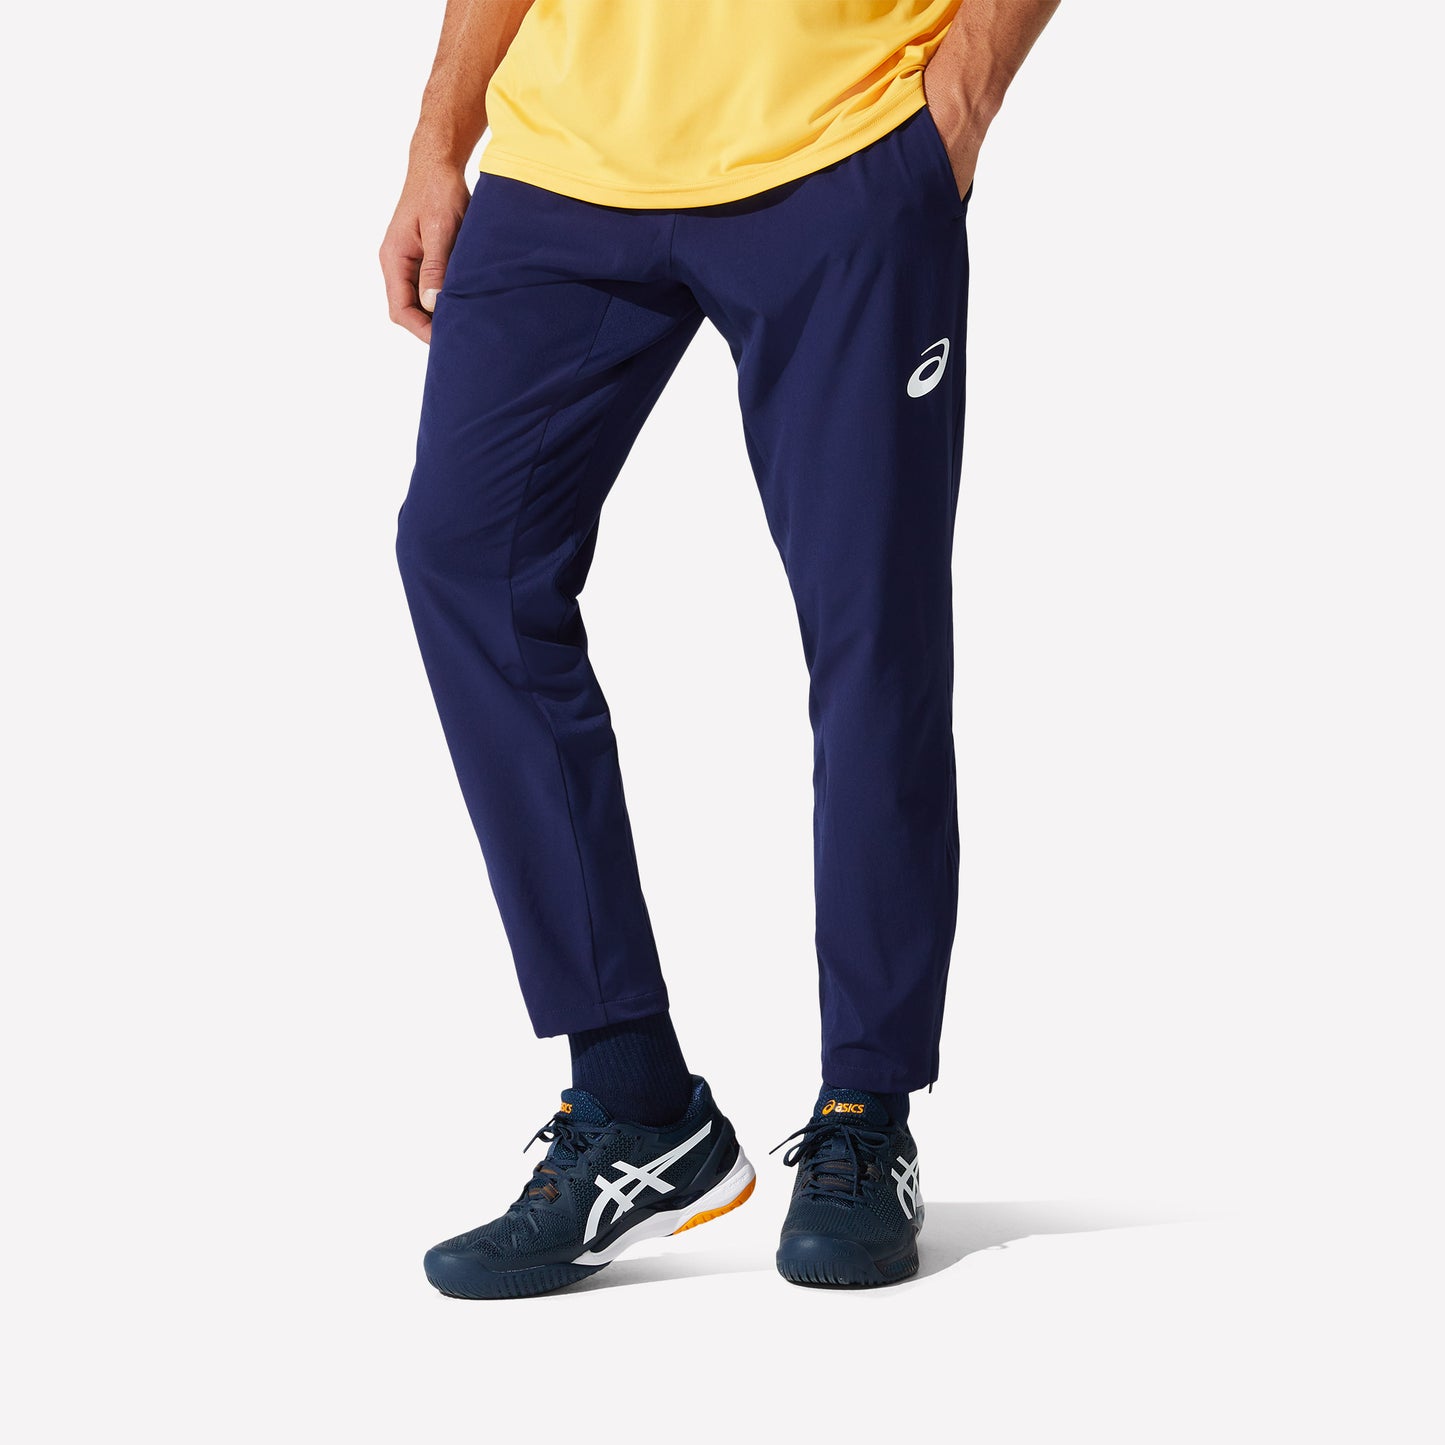 ASICS Match Men's Woven Tennis Pants Blue (1)